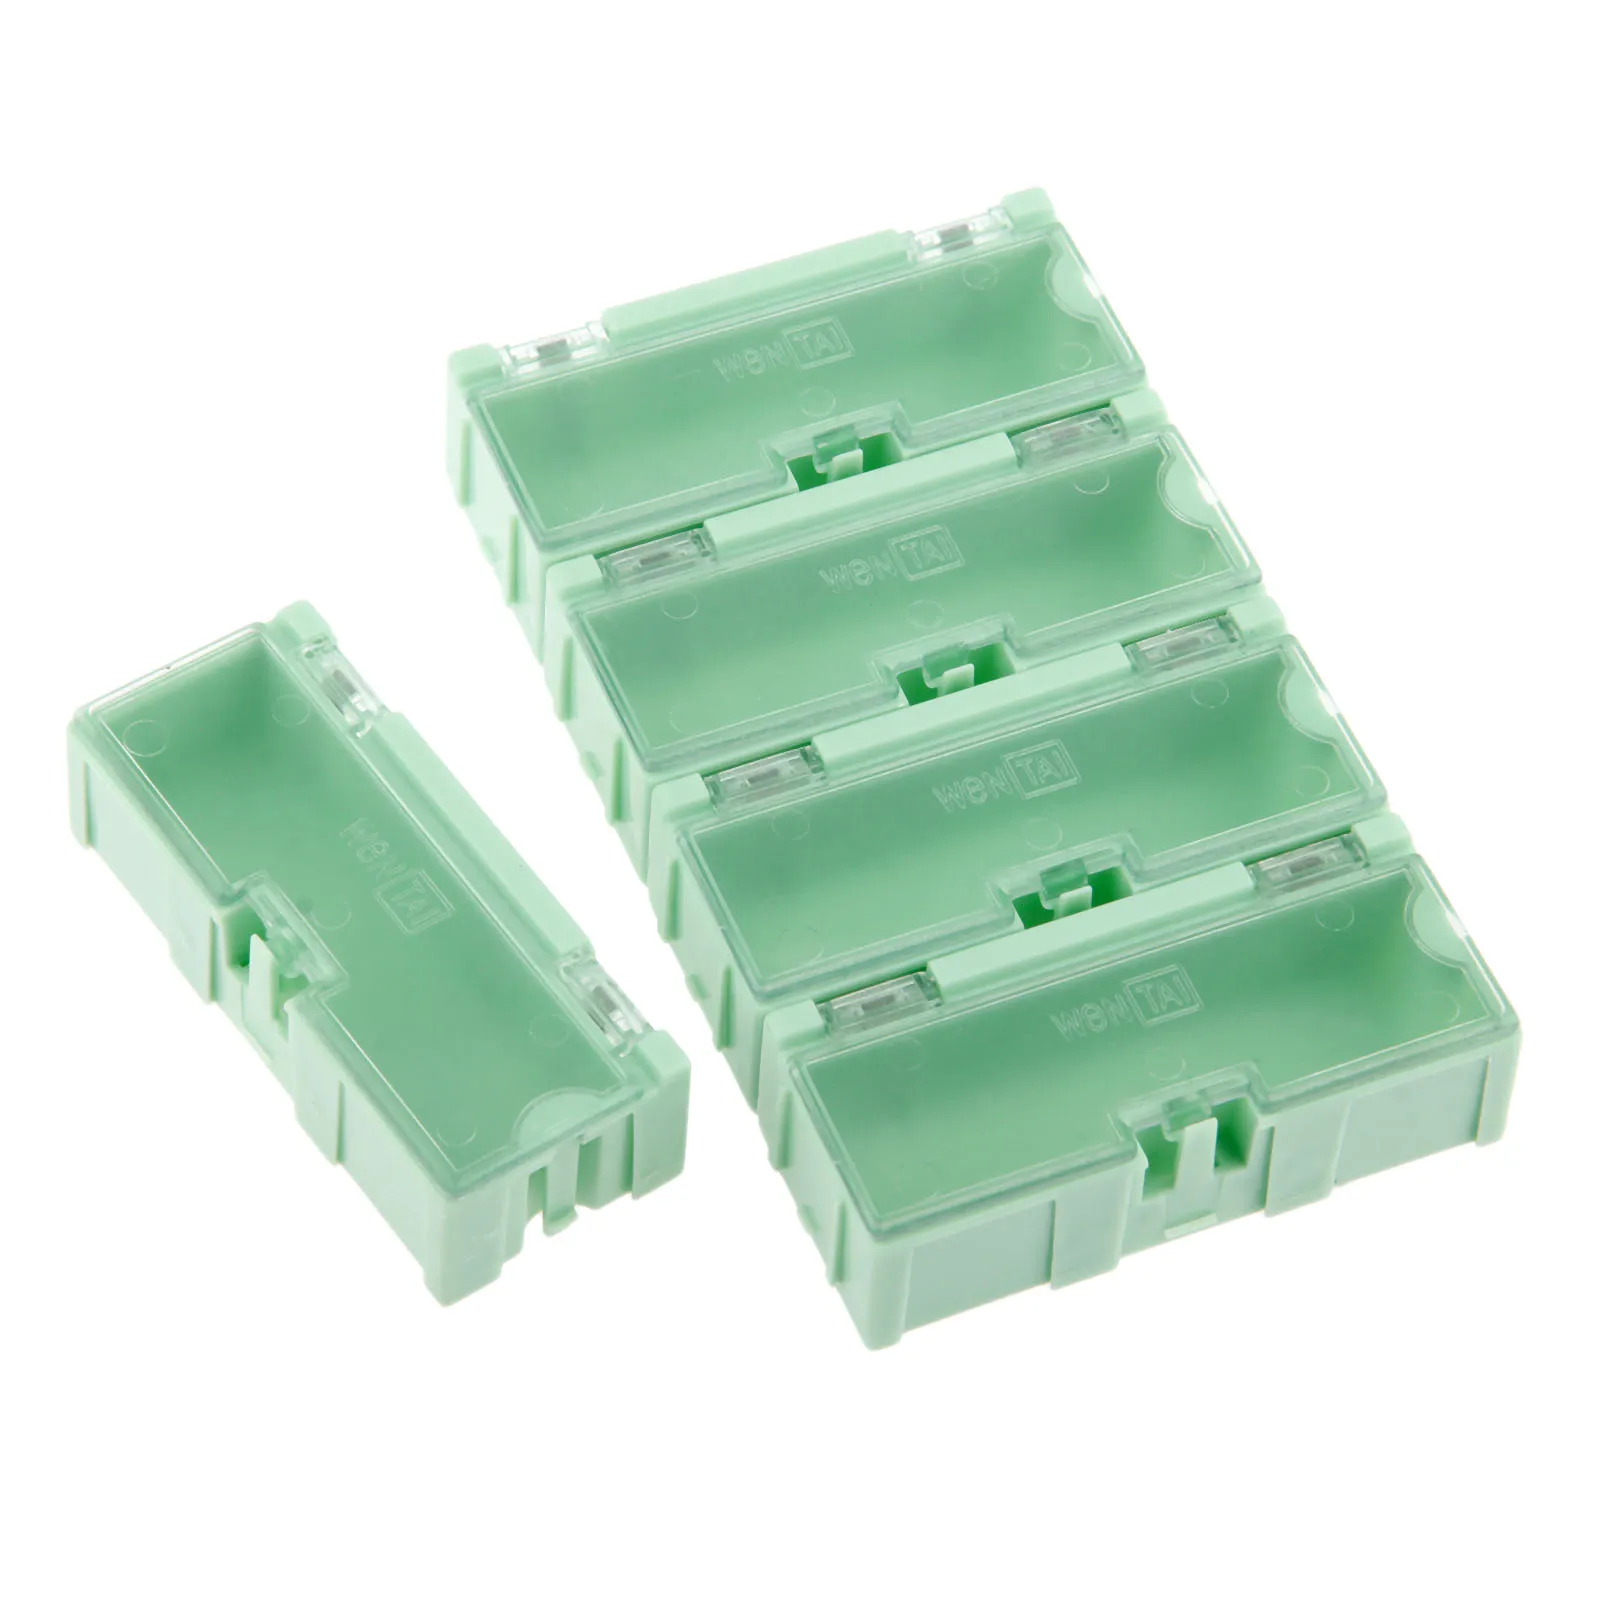 DRELD 5 шт. SMD SMT компонент ящики для хранения контейнеров электронный чехол больше ювелирных изделий Чехол коробки для инструментов зеленый 75*32*21 мм